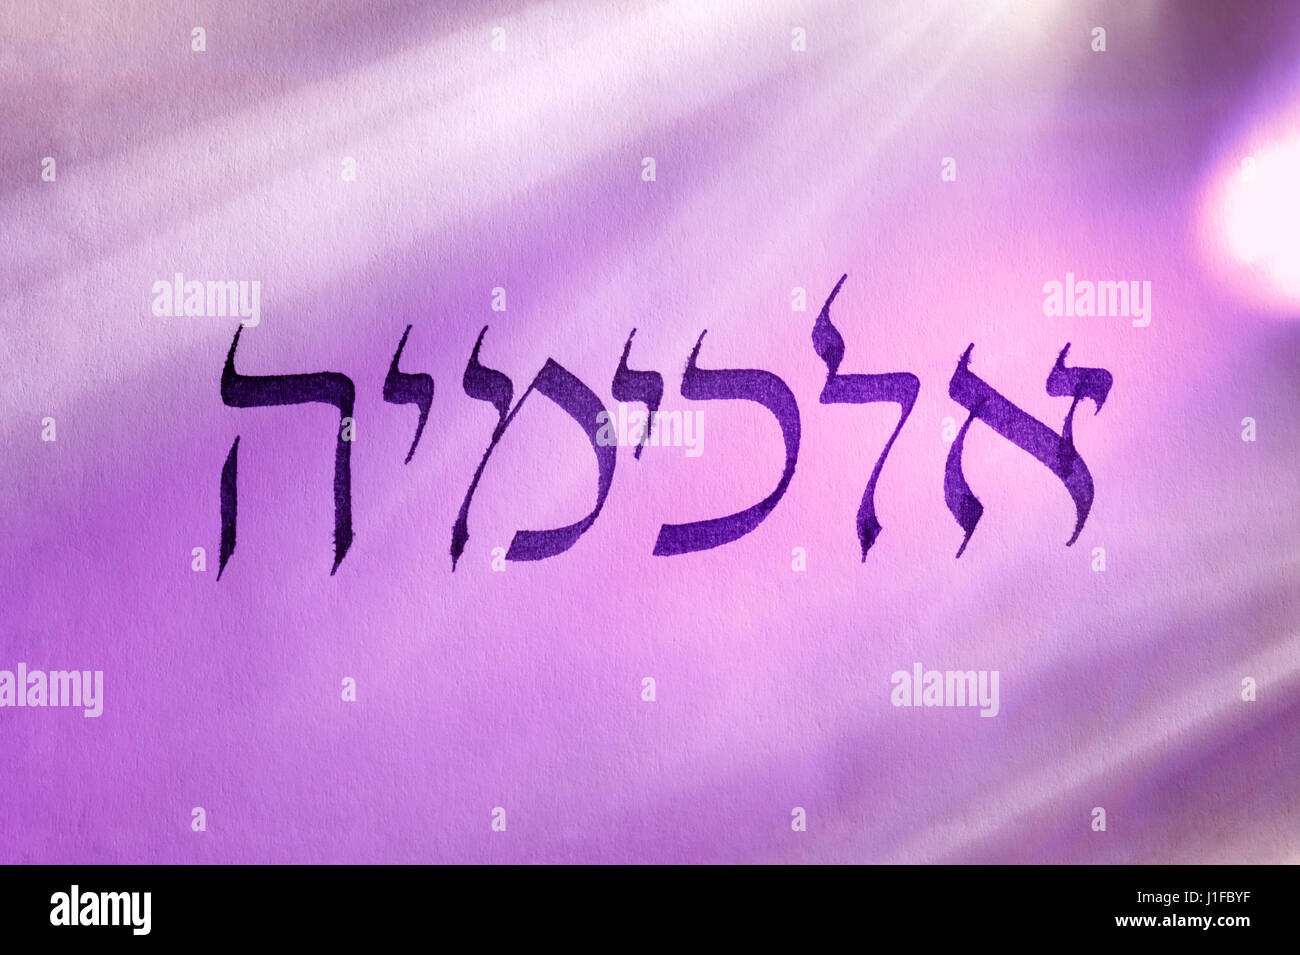 Handgeschriebene Wort Alchemie in hebräischer Schrift unter bunten Lichtern. Hebräische Sprache. Stockfoto